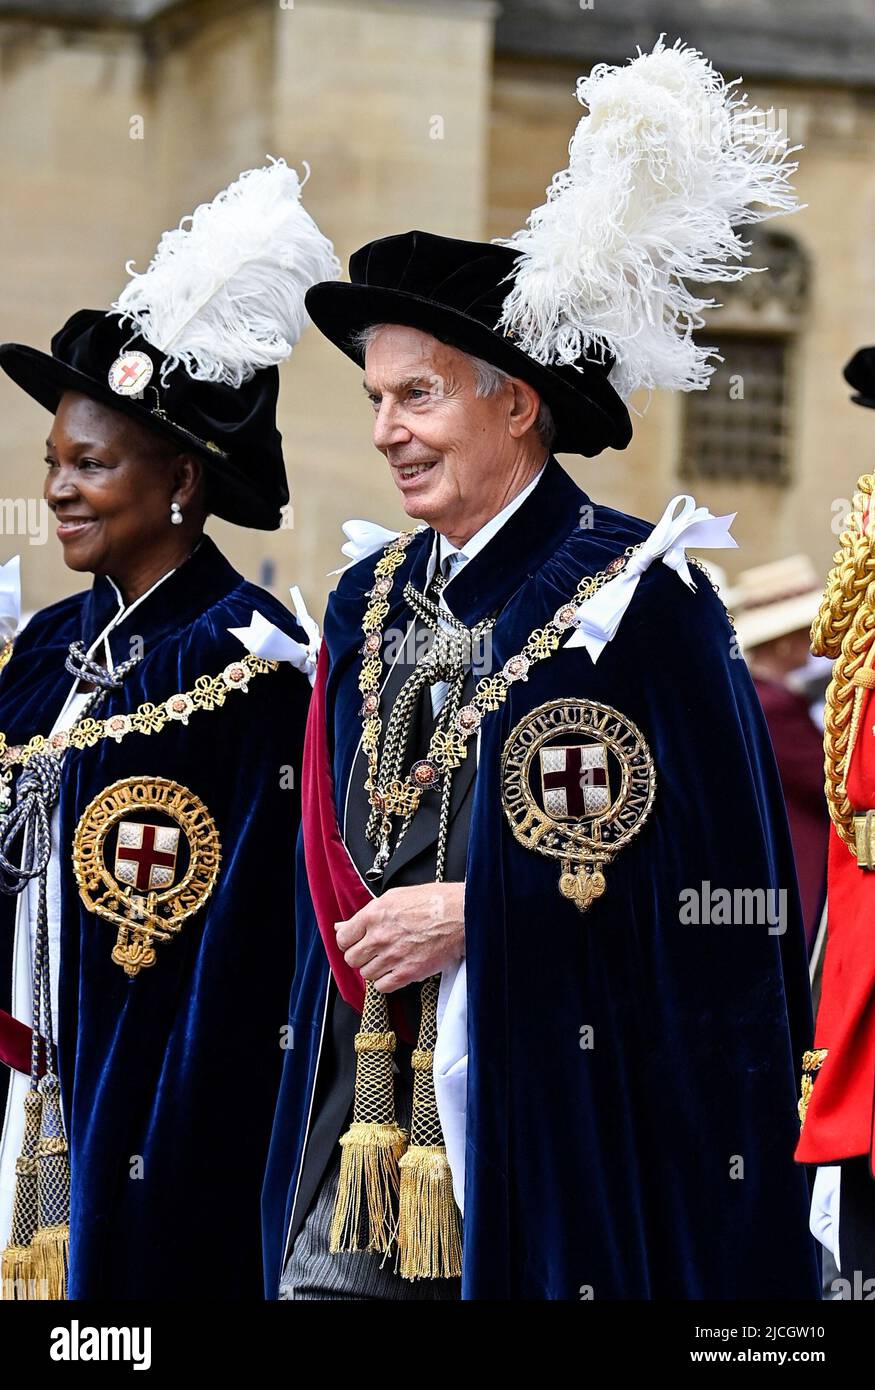 El ex Primer Ministro Sir Tony Blair y la Baronesa Amos durante la Orden anual del Servicio de la Garter en la Capilla de San Jorge, Castillo de Windsor. Fecha de la foto: Lunes 13 de junio de 2022. Foto de stock